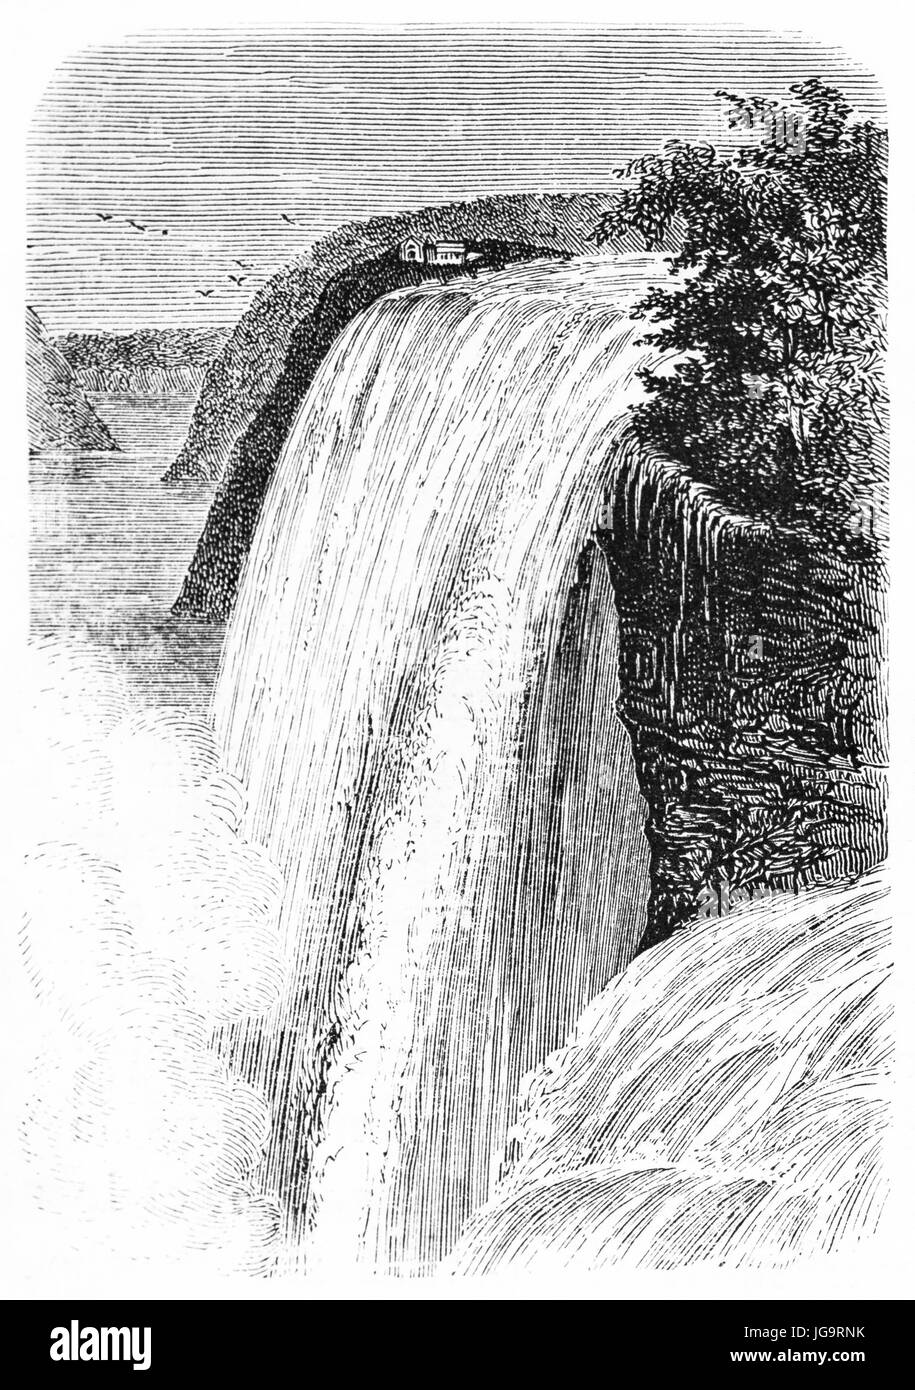 Zentraler Fall der Niagara Wasserfälle, Nordamerika. Große Wassermenge, die wild nach unten fällt und Schaum macht. Alte graue Ton Radierung Stil Kunst von Huet, 1861 Stockfoto